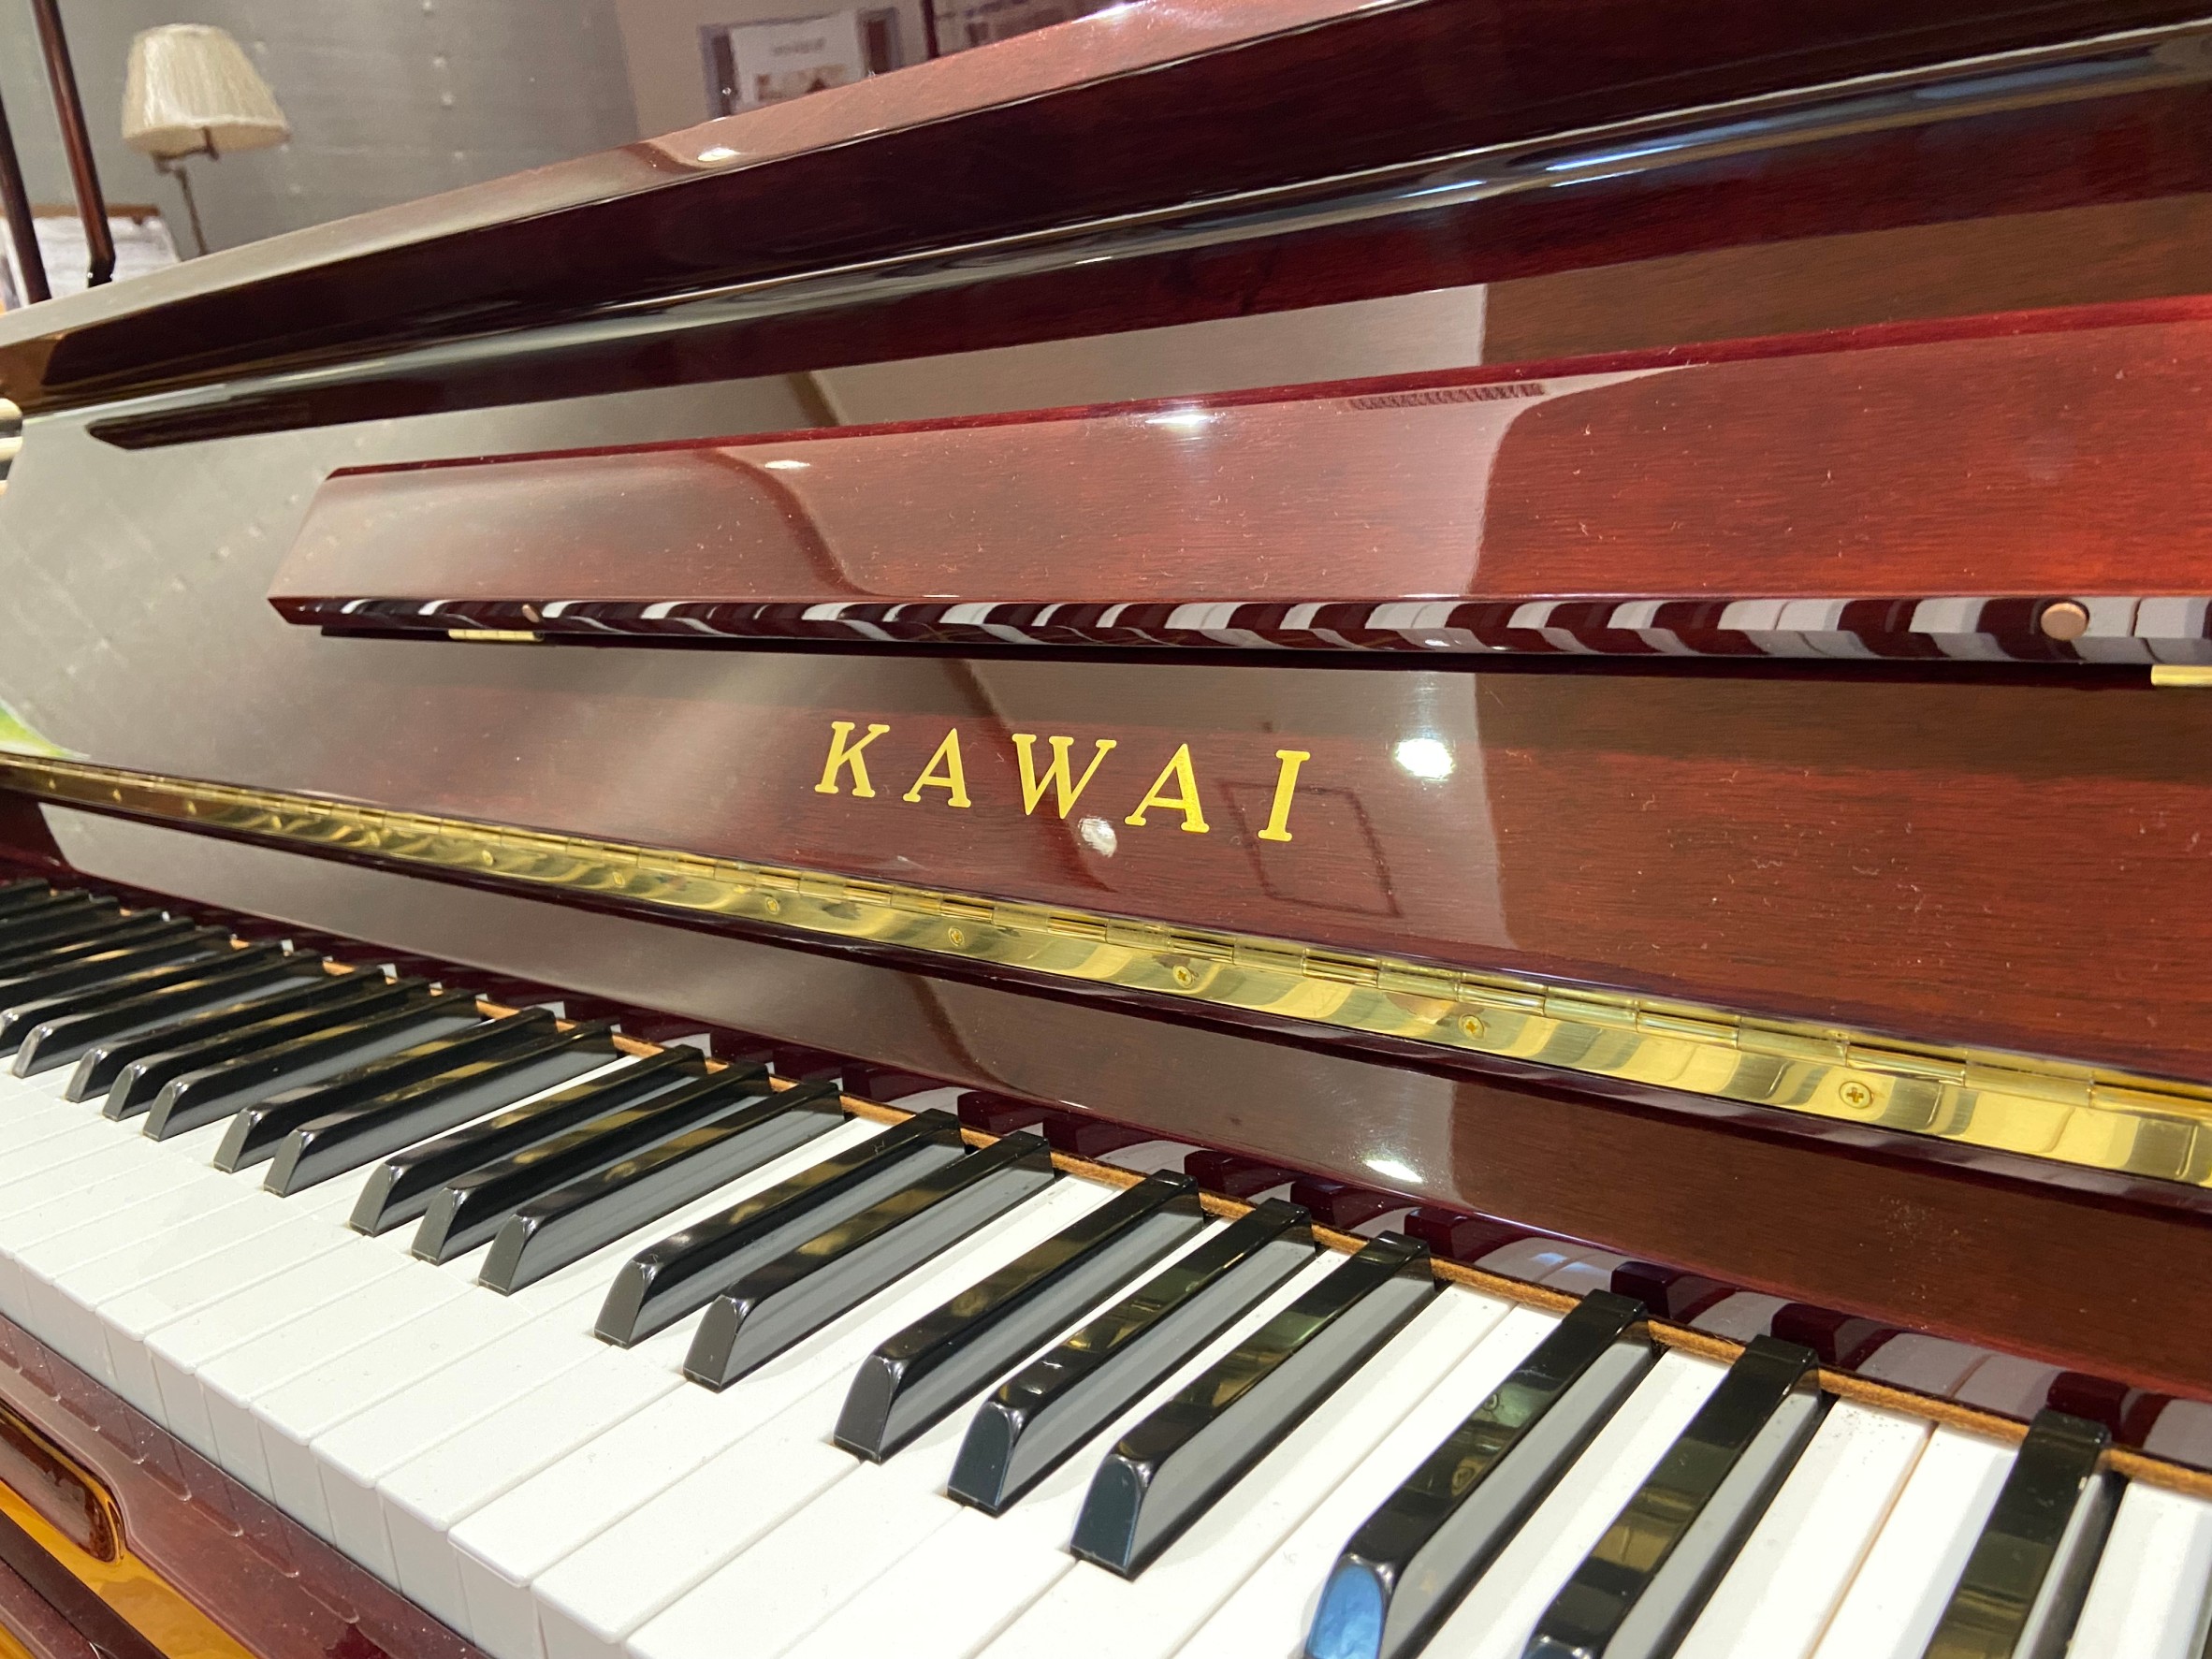 中古ピアノを見るなら横浜みなとみらい店へ ヤマハ カワイ スタインウェイまで 島村楽器 横浜みなとみらい店